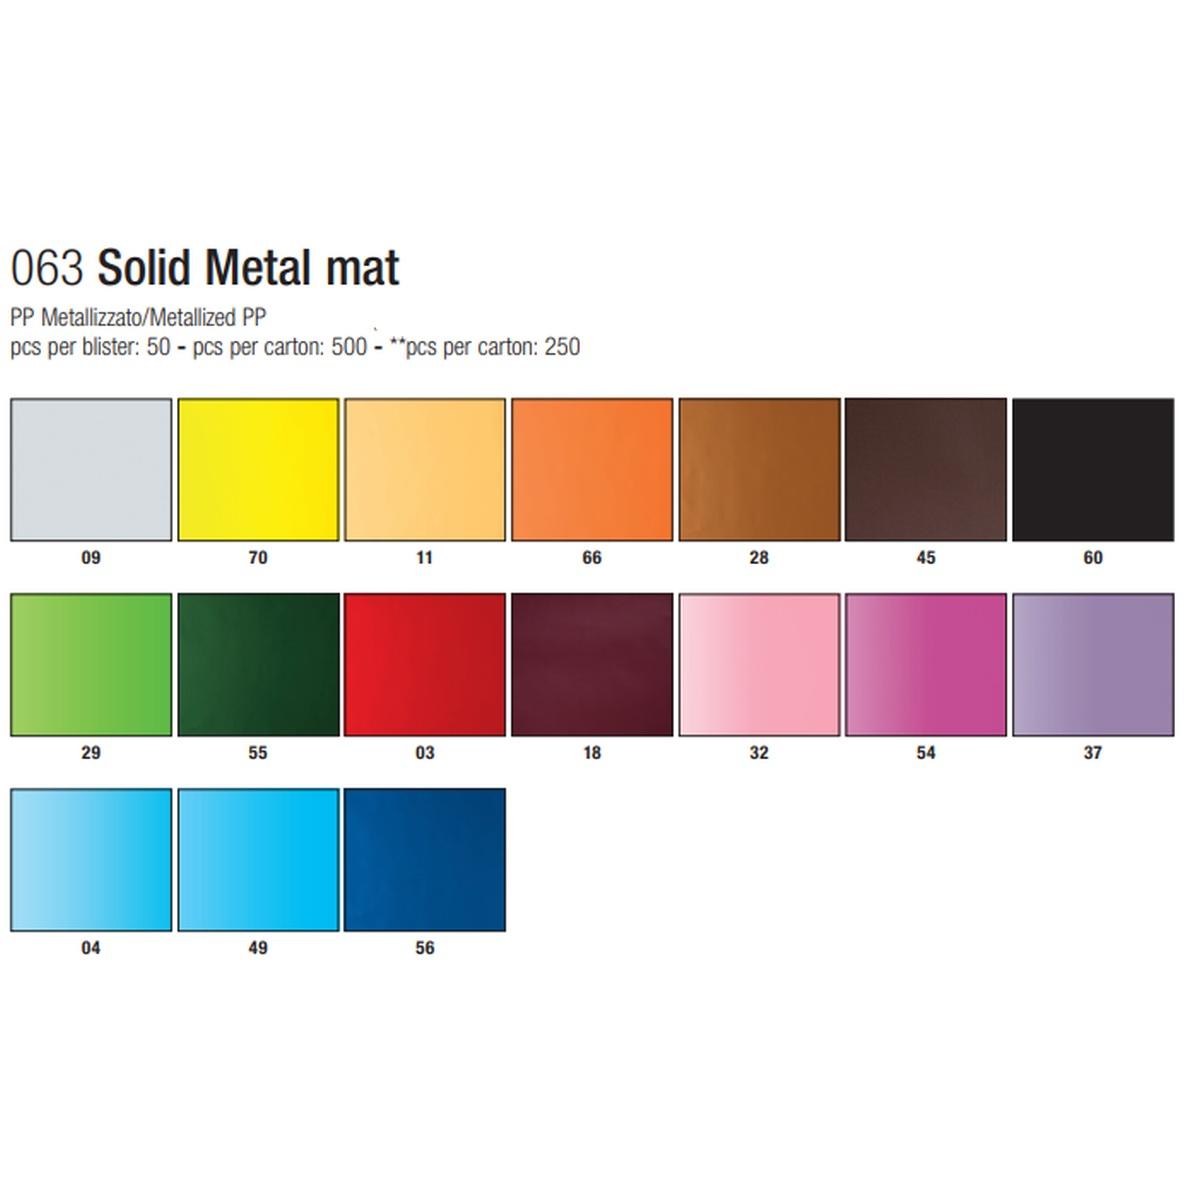 Star - sacchetti pp metallizzato solid metal mat - formato 60 x 80 cm - 35 micron